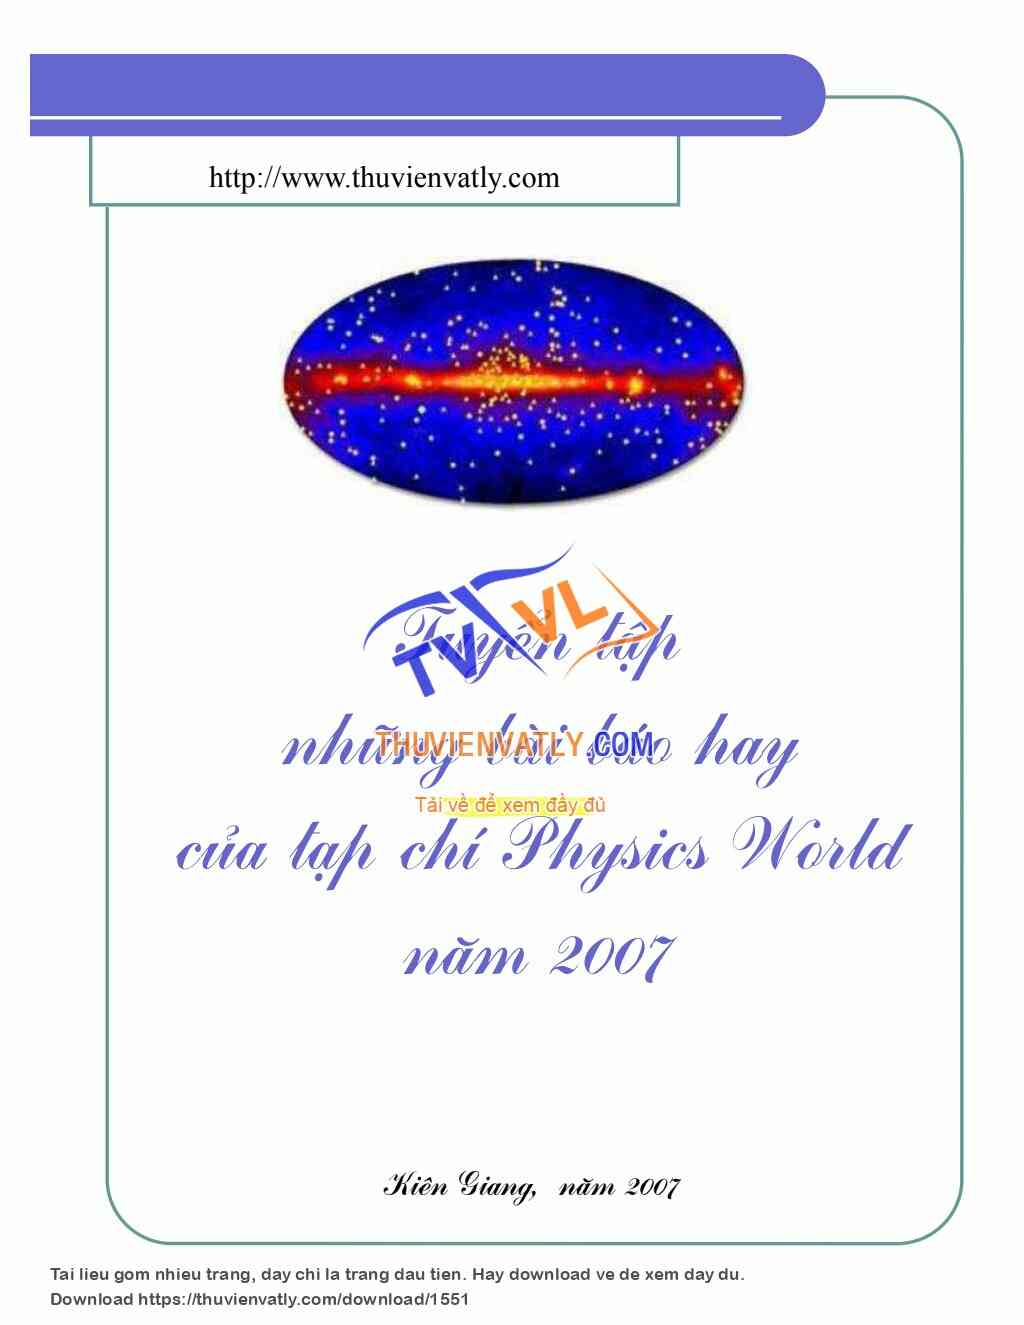 Tuyển tập những bài báo hay của tạp chí Physics World năm 2007 (hiepkhachquay)